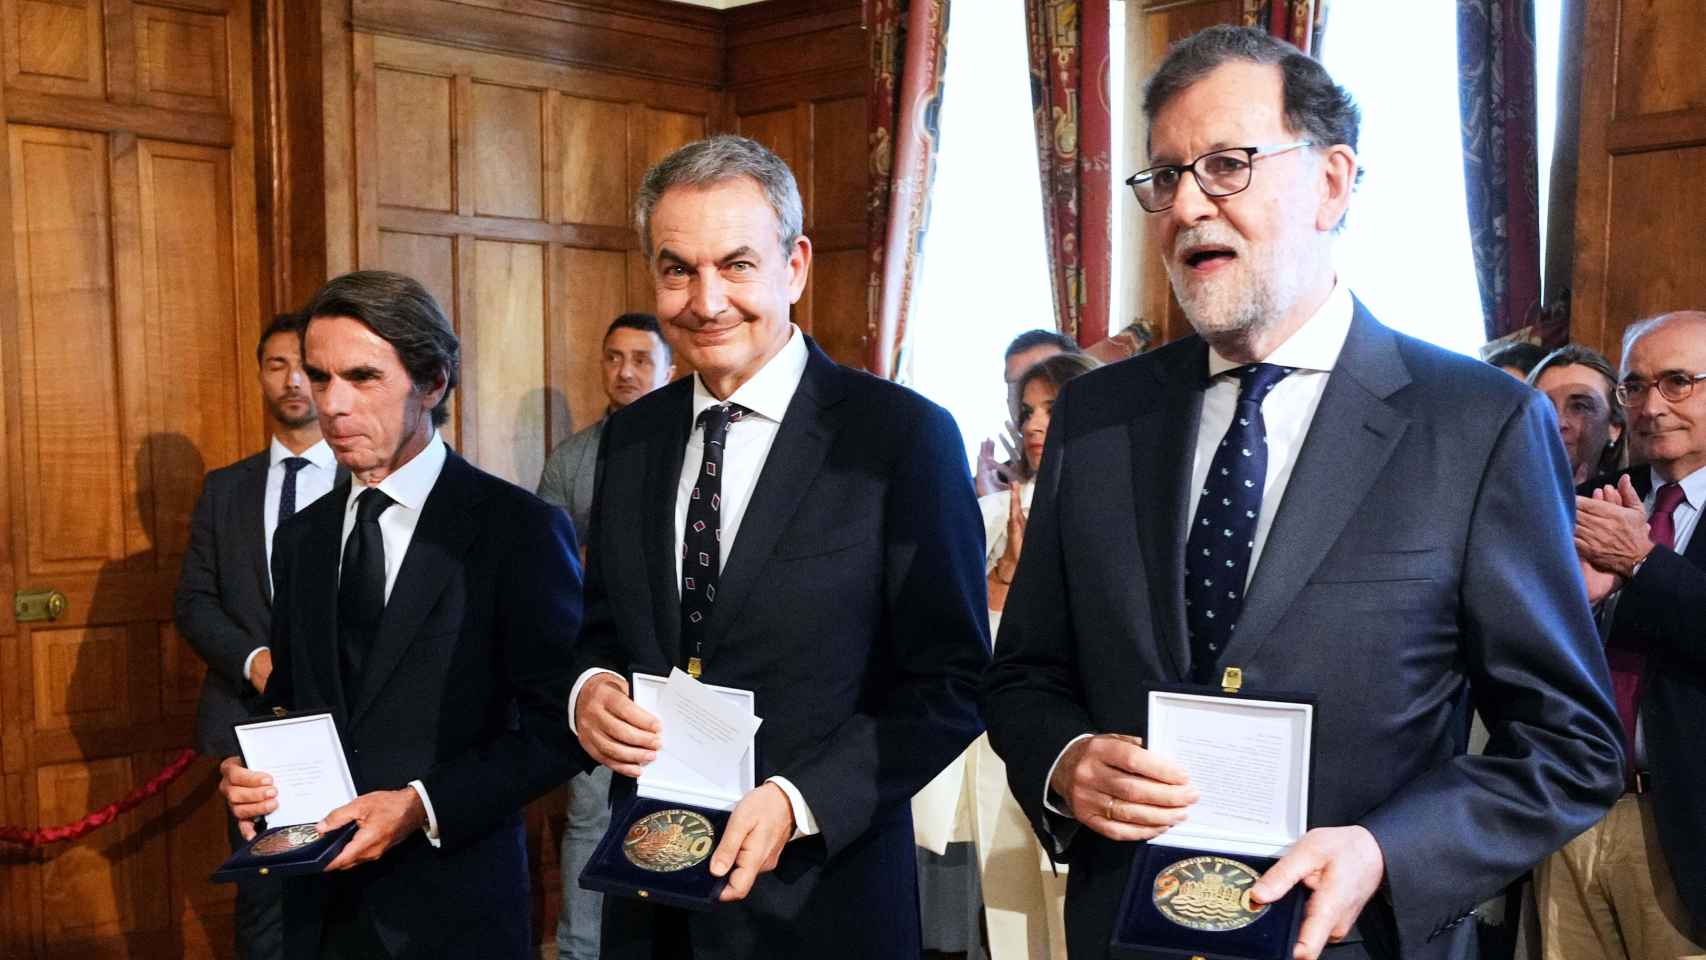 José María Aznaz, José Luis Rodríguez Zapatero y Mariano Rajoy, en un acto.